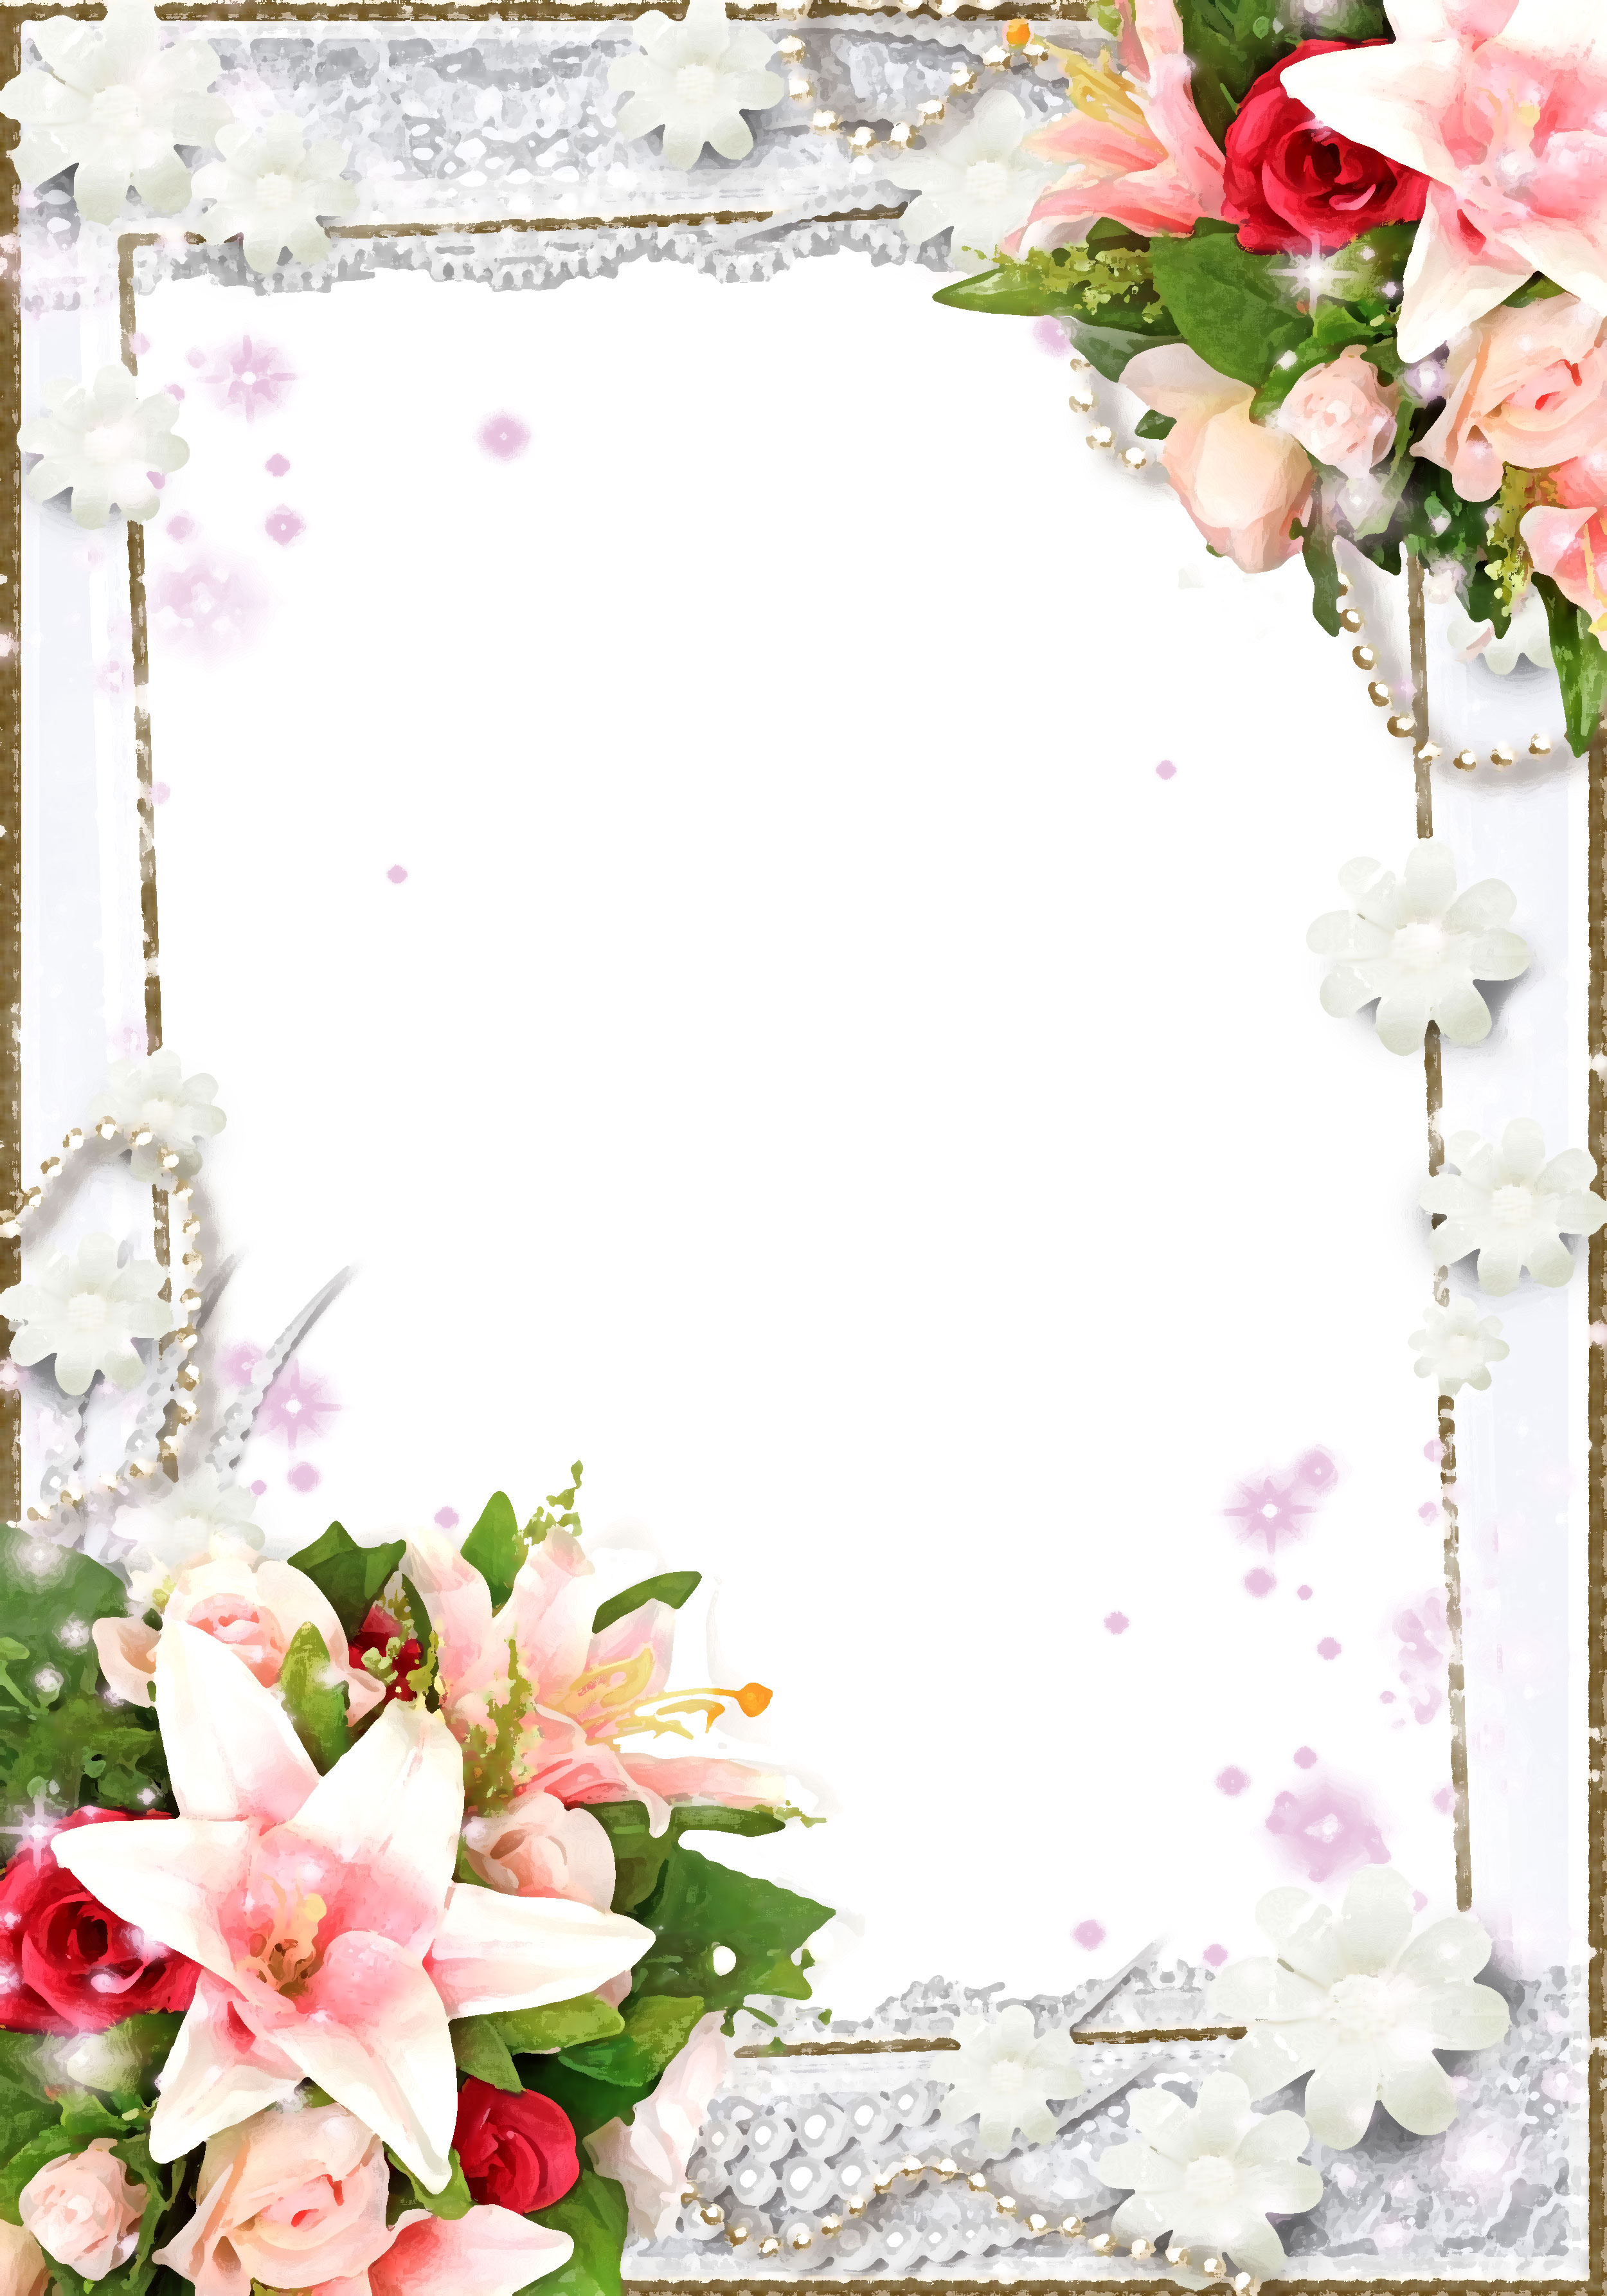 壁紙 背景イラスト 花のフレーム 外枠 No 102 ユリとバラ 真珠